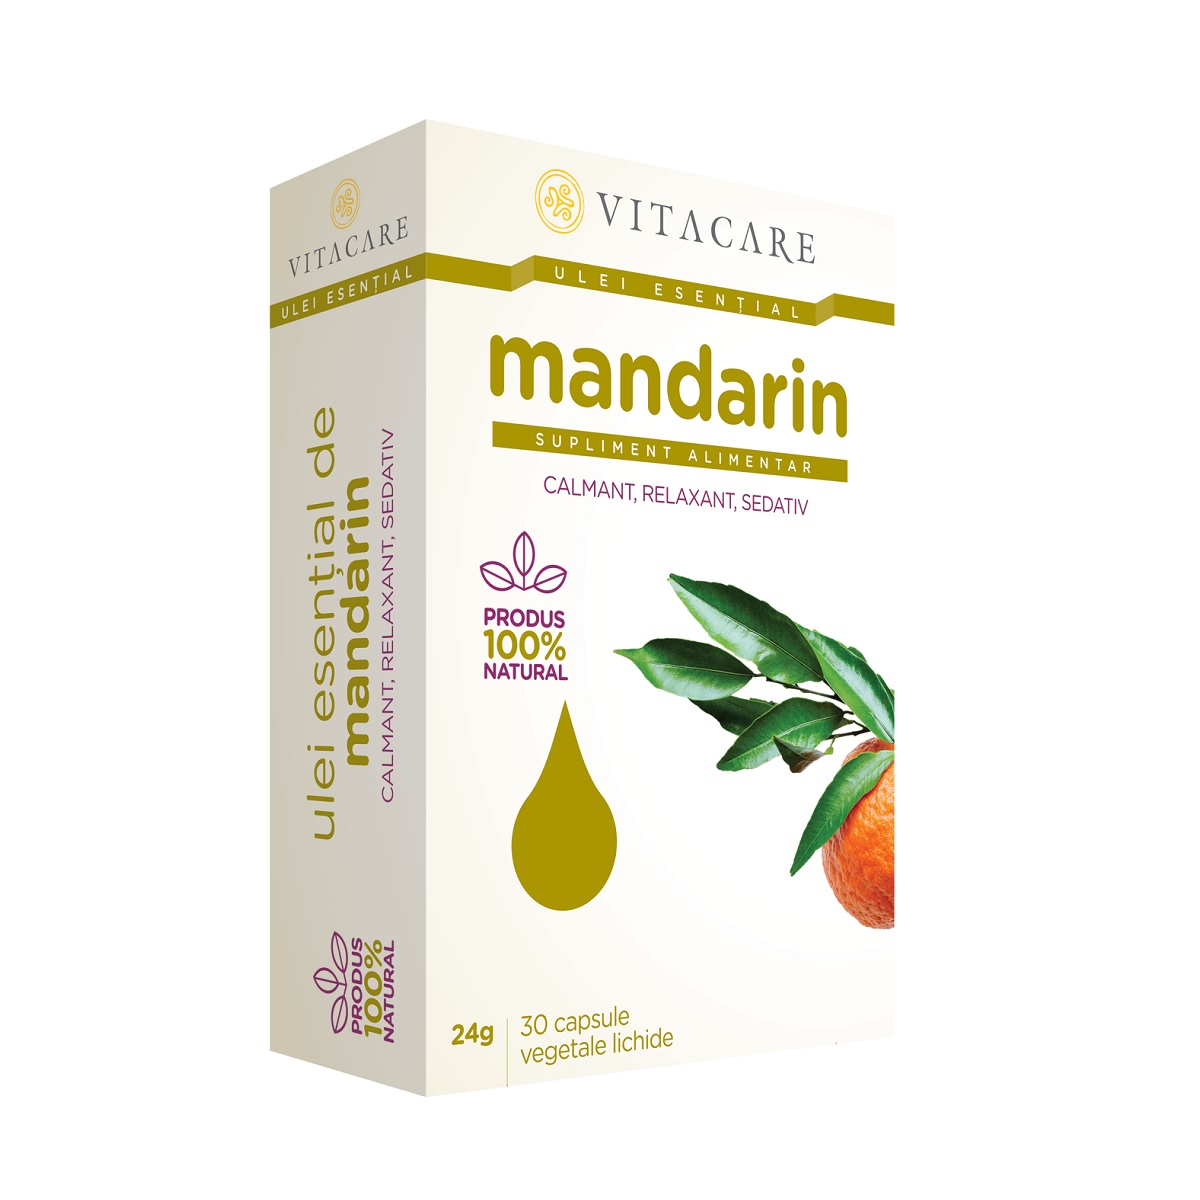 Antistres - Ulei esential mandarin, 30 capsule, Vitacare, sinapis.ro